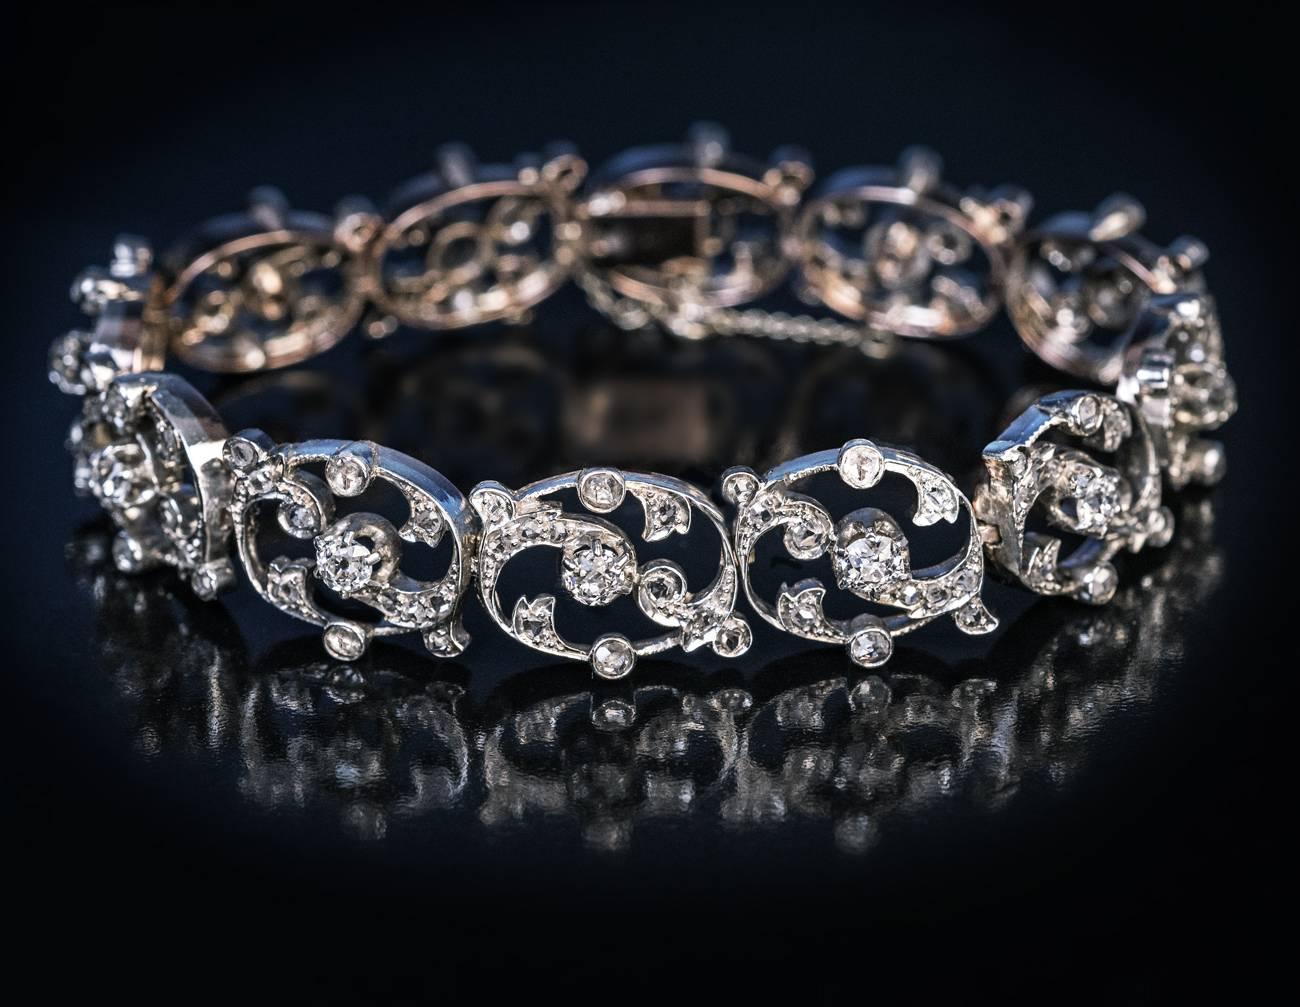 Etwa 1890er Jahre
Ein antikes französisches Armband mit durchbrochenem Blumenmotiv wurde in feiner Handarbeit aus 18-karätigem Gold mit Silberüberzug gefertigt (Vorderseite - Silber, Rückseite - Gold). Das Armband ist mit 12 Diamanten im alten